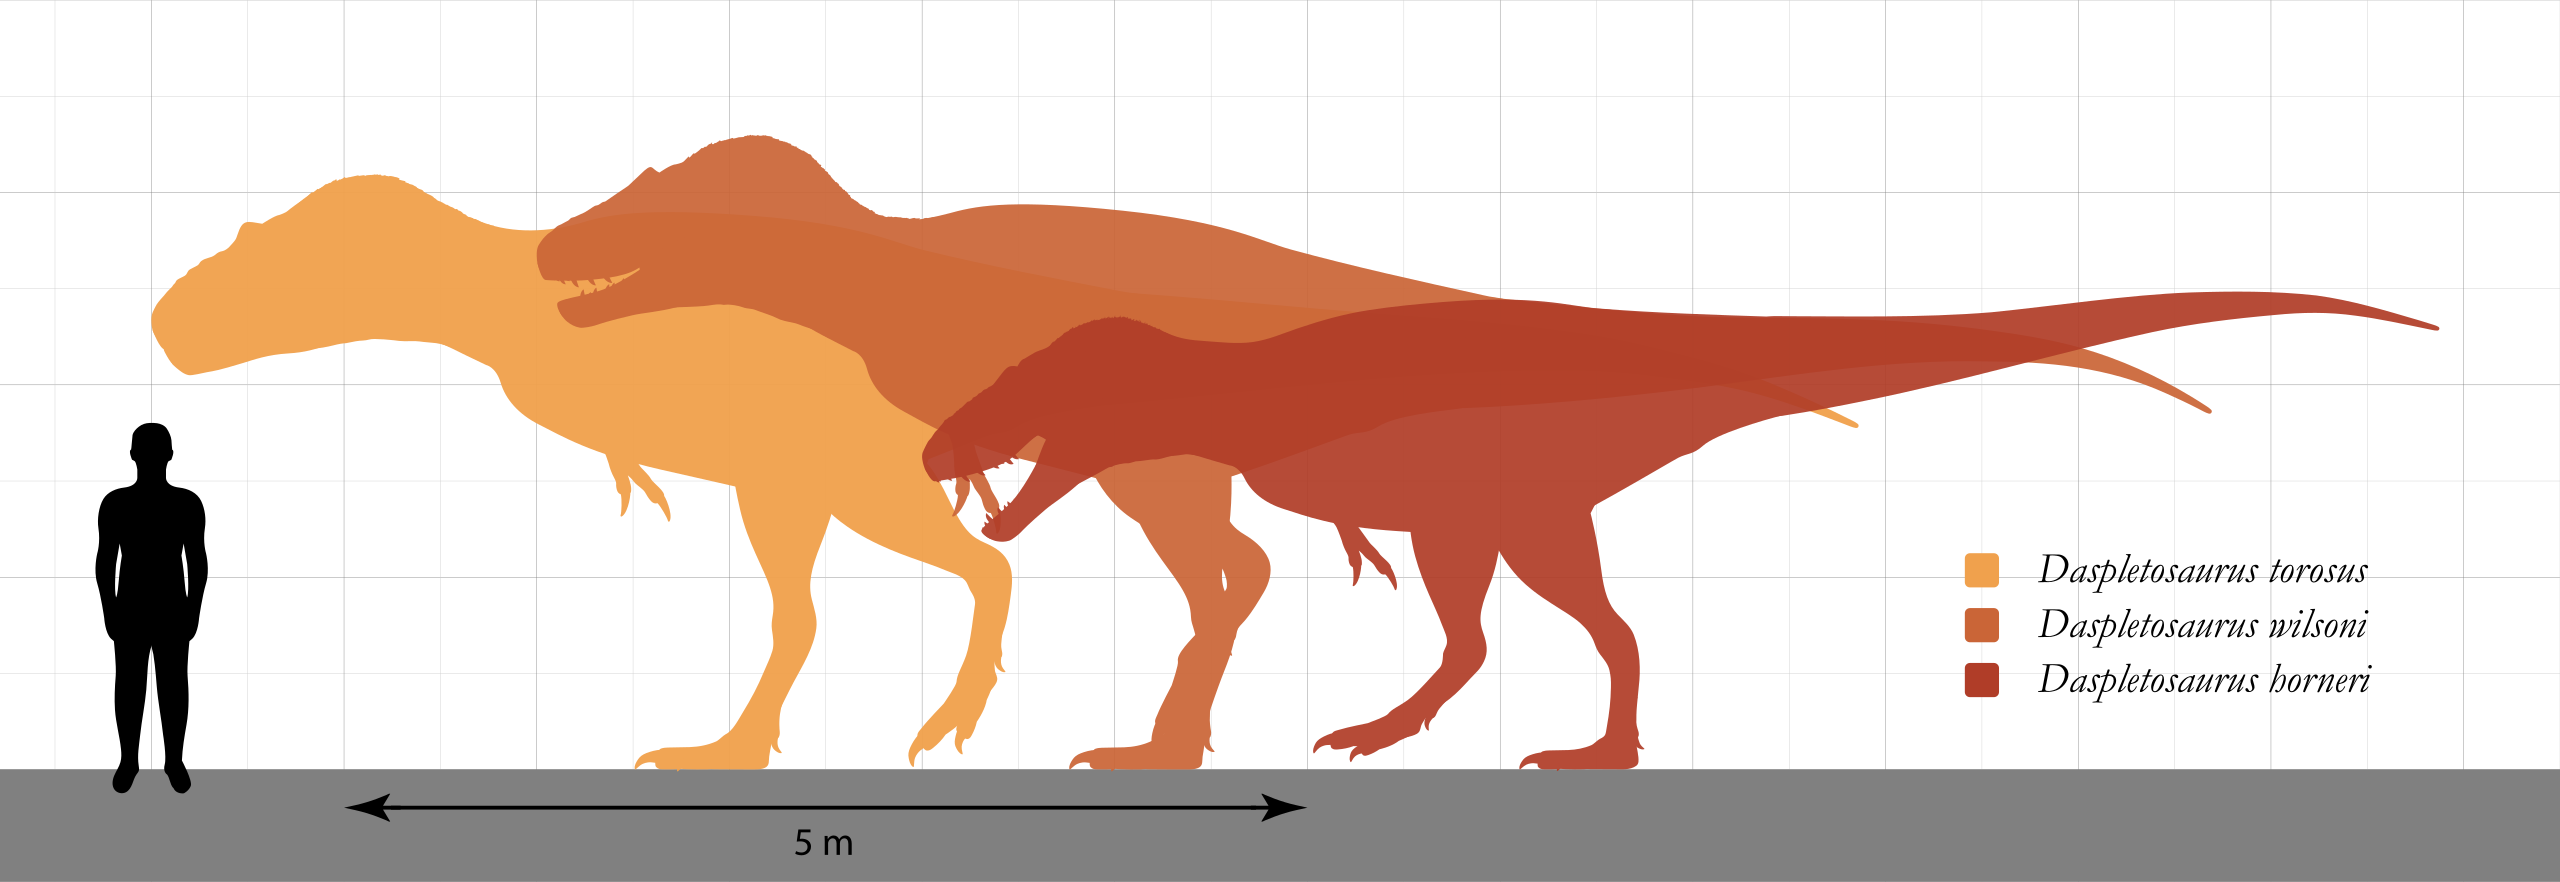 Dnes už známe dokonce tři druhy rodu Daspletosaurus, přičemž typovým druhem je D. torosus, formálně popsaný z kanadské Alberty roku 1970. Největší zástupci tohoto rodu mohli patrně vážit až kolem 4 tun, takže se již velikostně blížili menším a středn